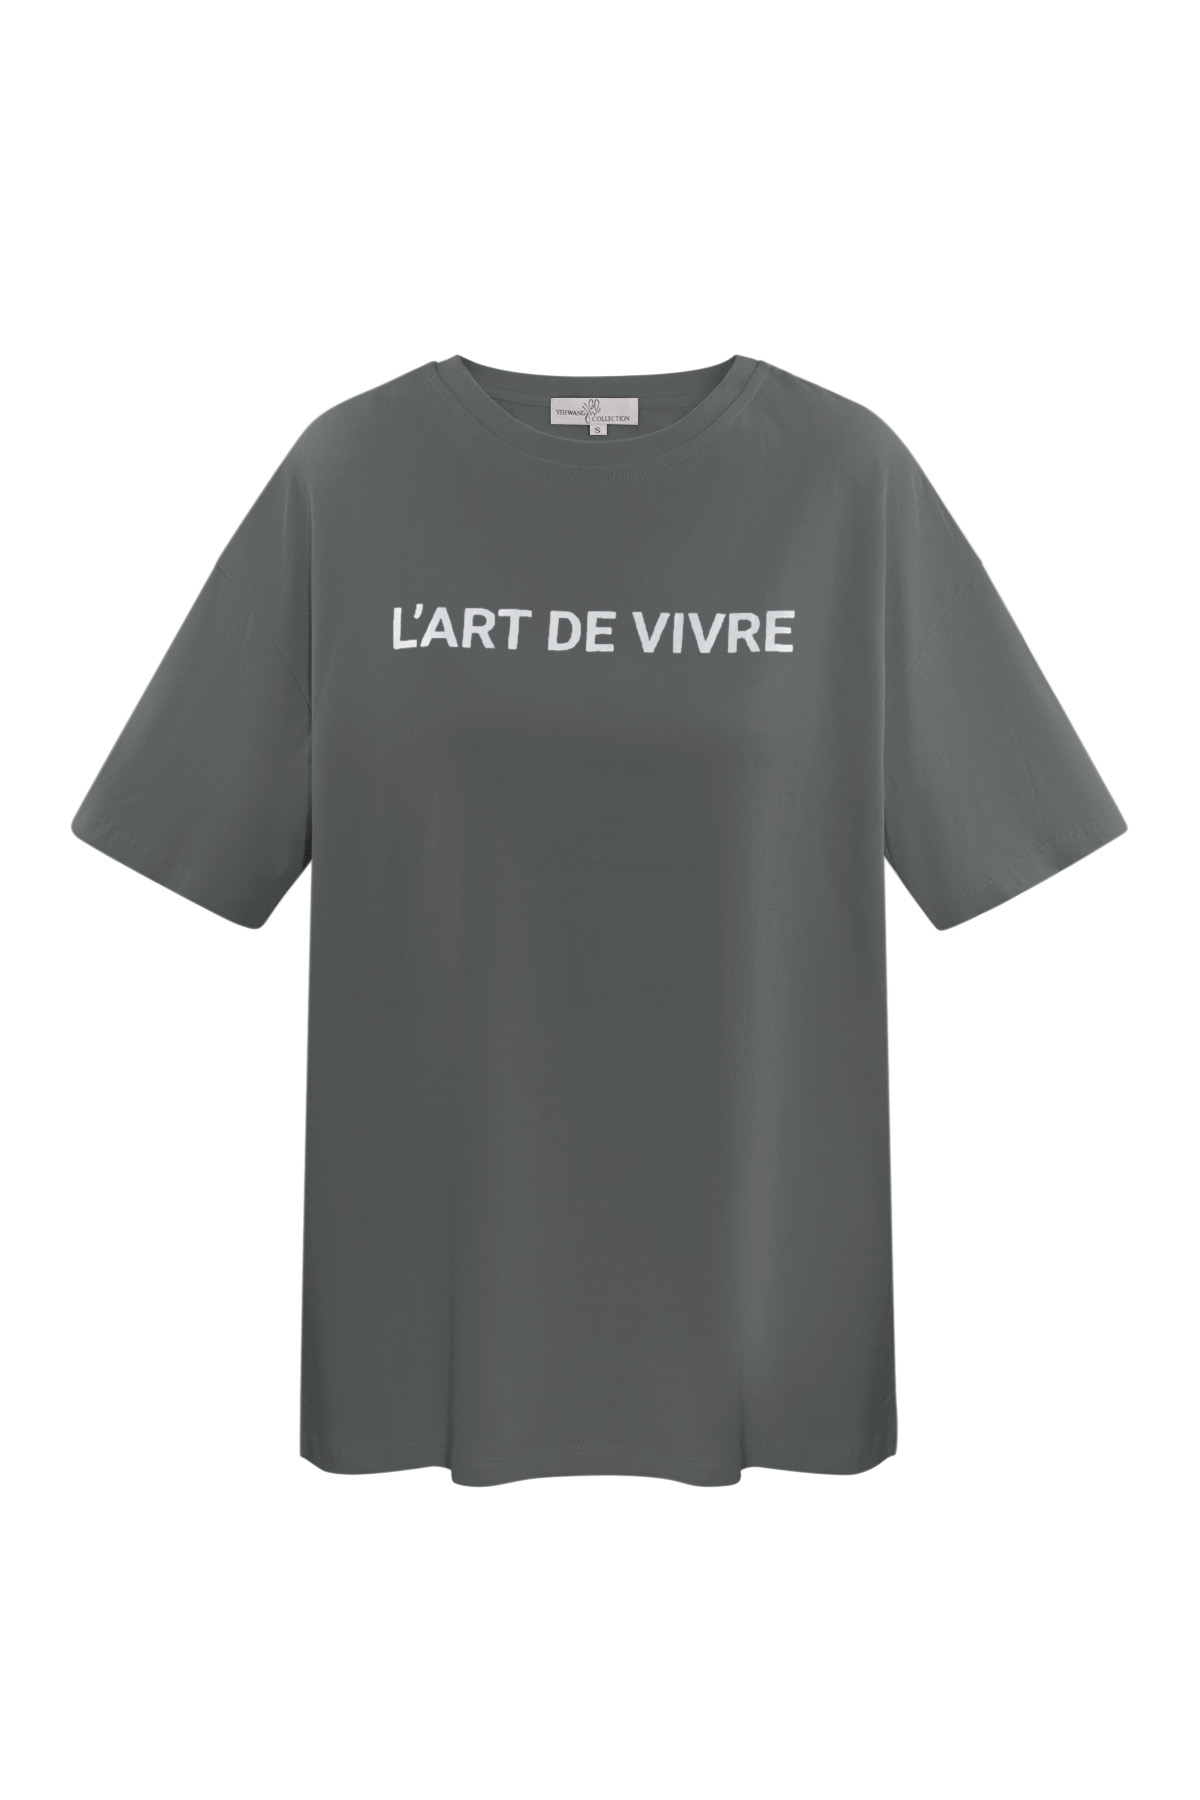 T-shirt l'art de vivre - grigio argento